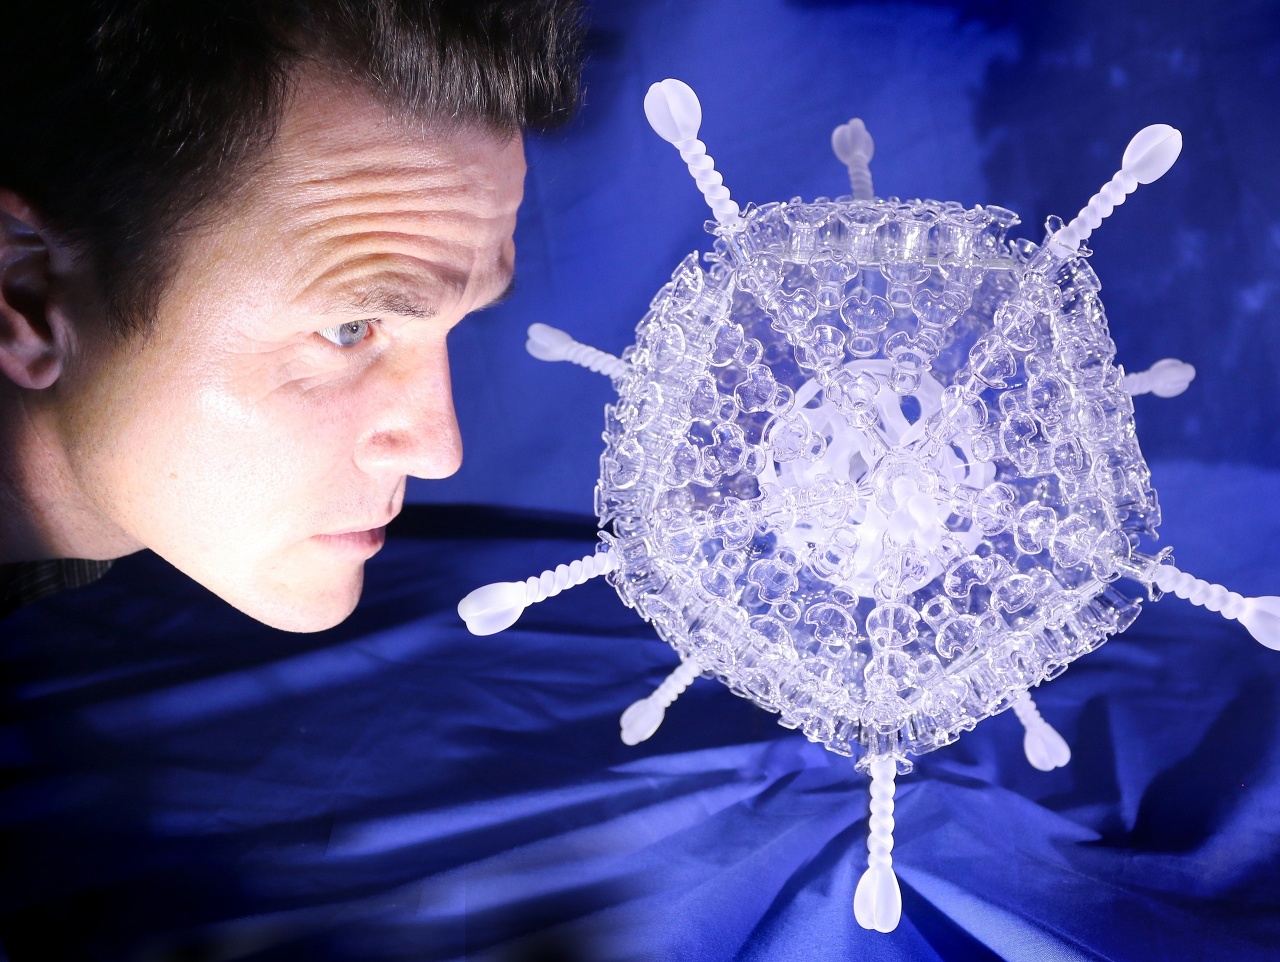 Britský umelec vytvoril sklenenú sochu zobrazujúcu vakcínu od firmy AstraZeneca